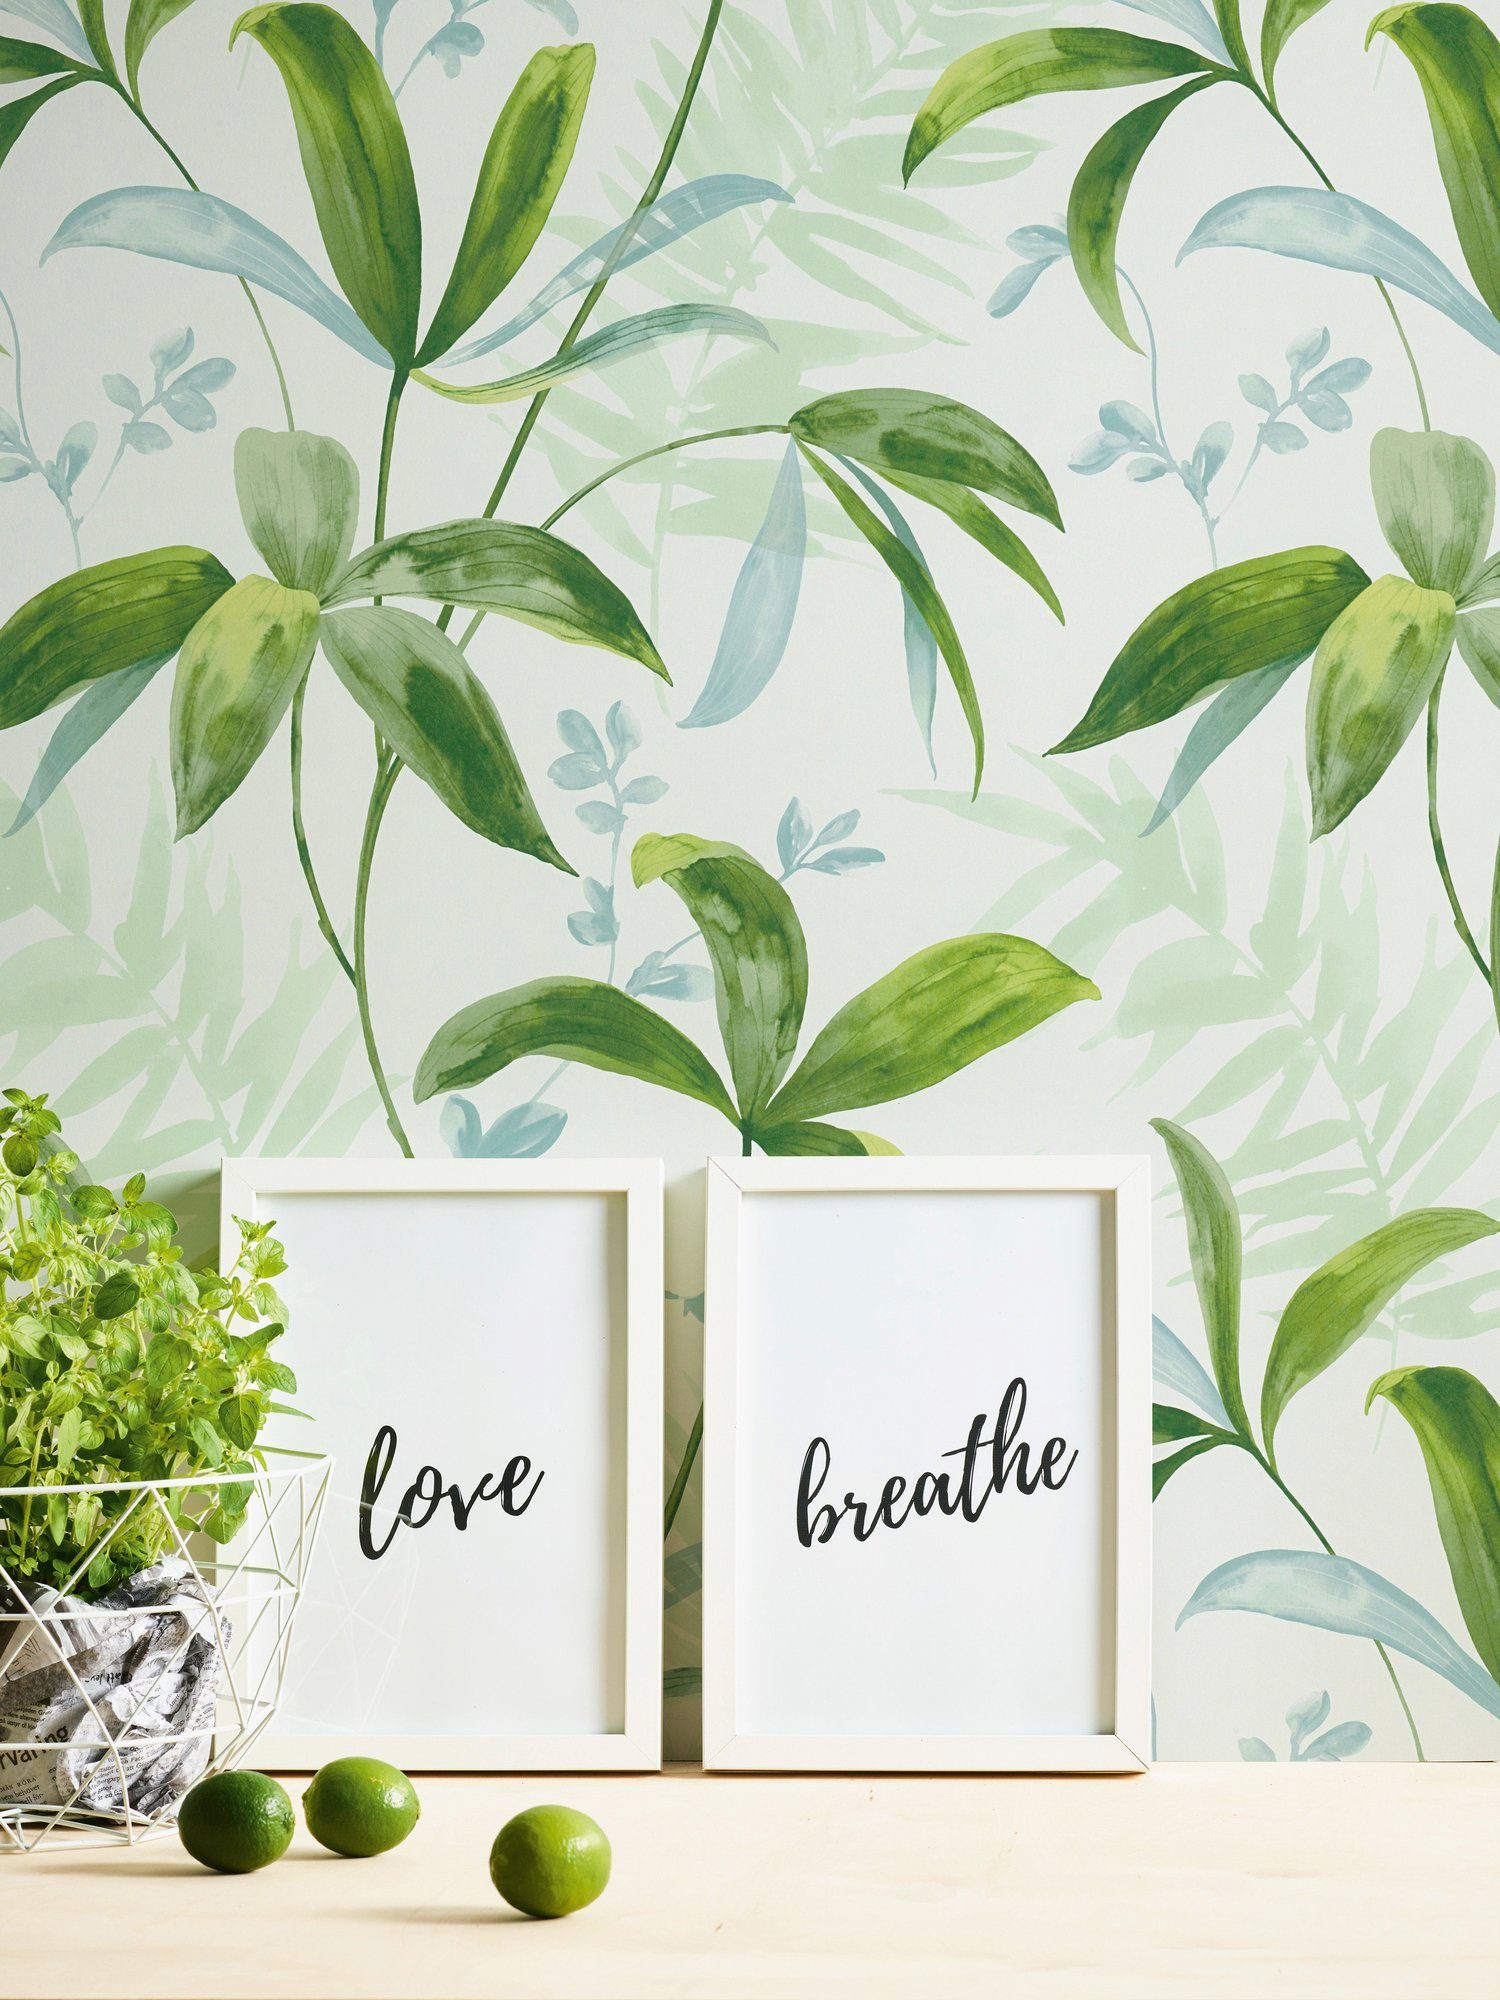 Palmentapete Dschungel Paper Chic, tropisch, grün/weiß Jungle glatt, Tapete floral, botanisch, Vliestapete Architects